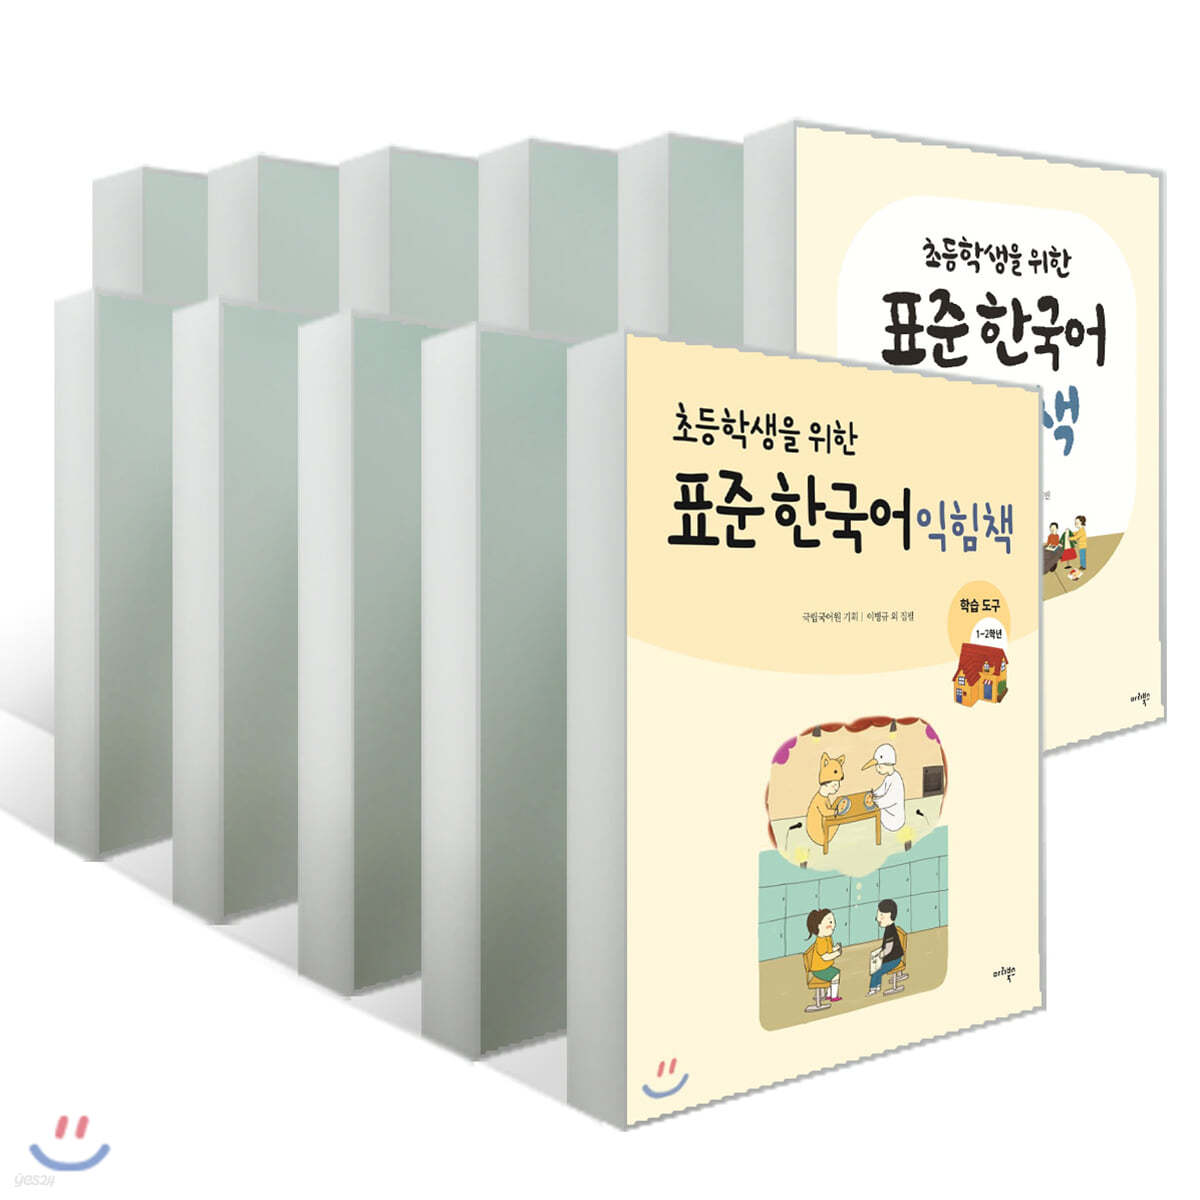 초등학생을 위한 표준 한국어 익힘책 11권 전권 세트